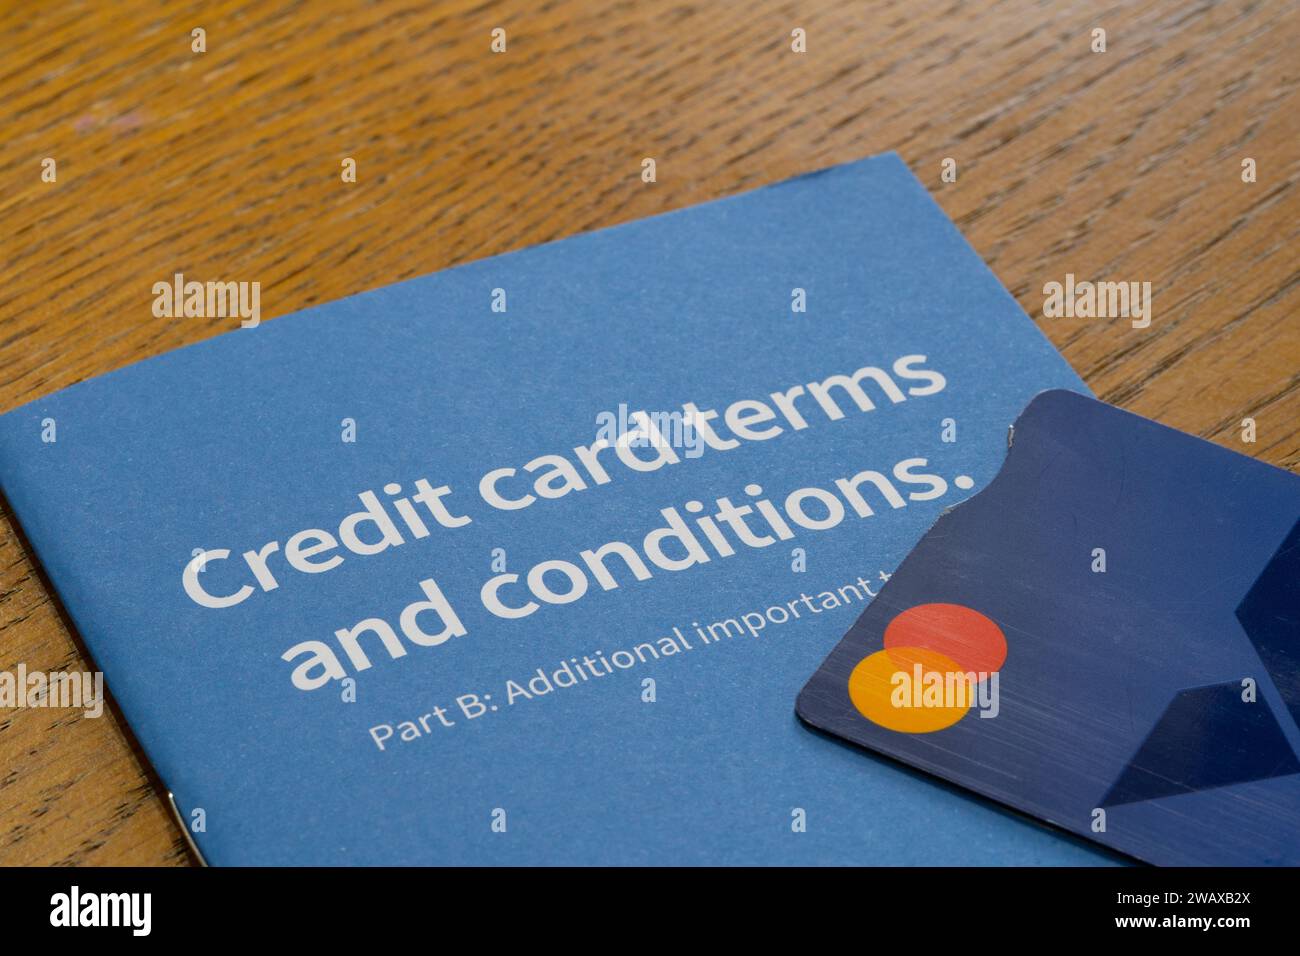 Eine Broschüre mit den Geschäftsbedingungen für Halifax-Kreditkarten, auf der eine Kreditkarte angebracht ist. Thema: Britische Kreditkartenschulden, britische Verbraucherschulden, Kreditkartenrückzahlungen Stockfoto